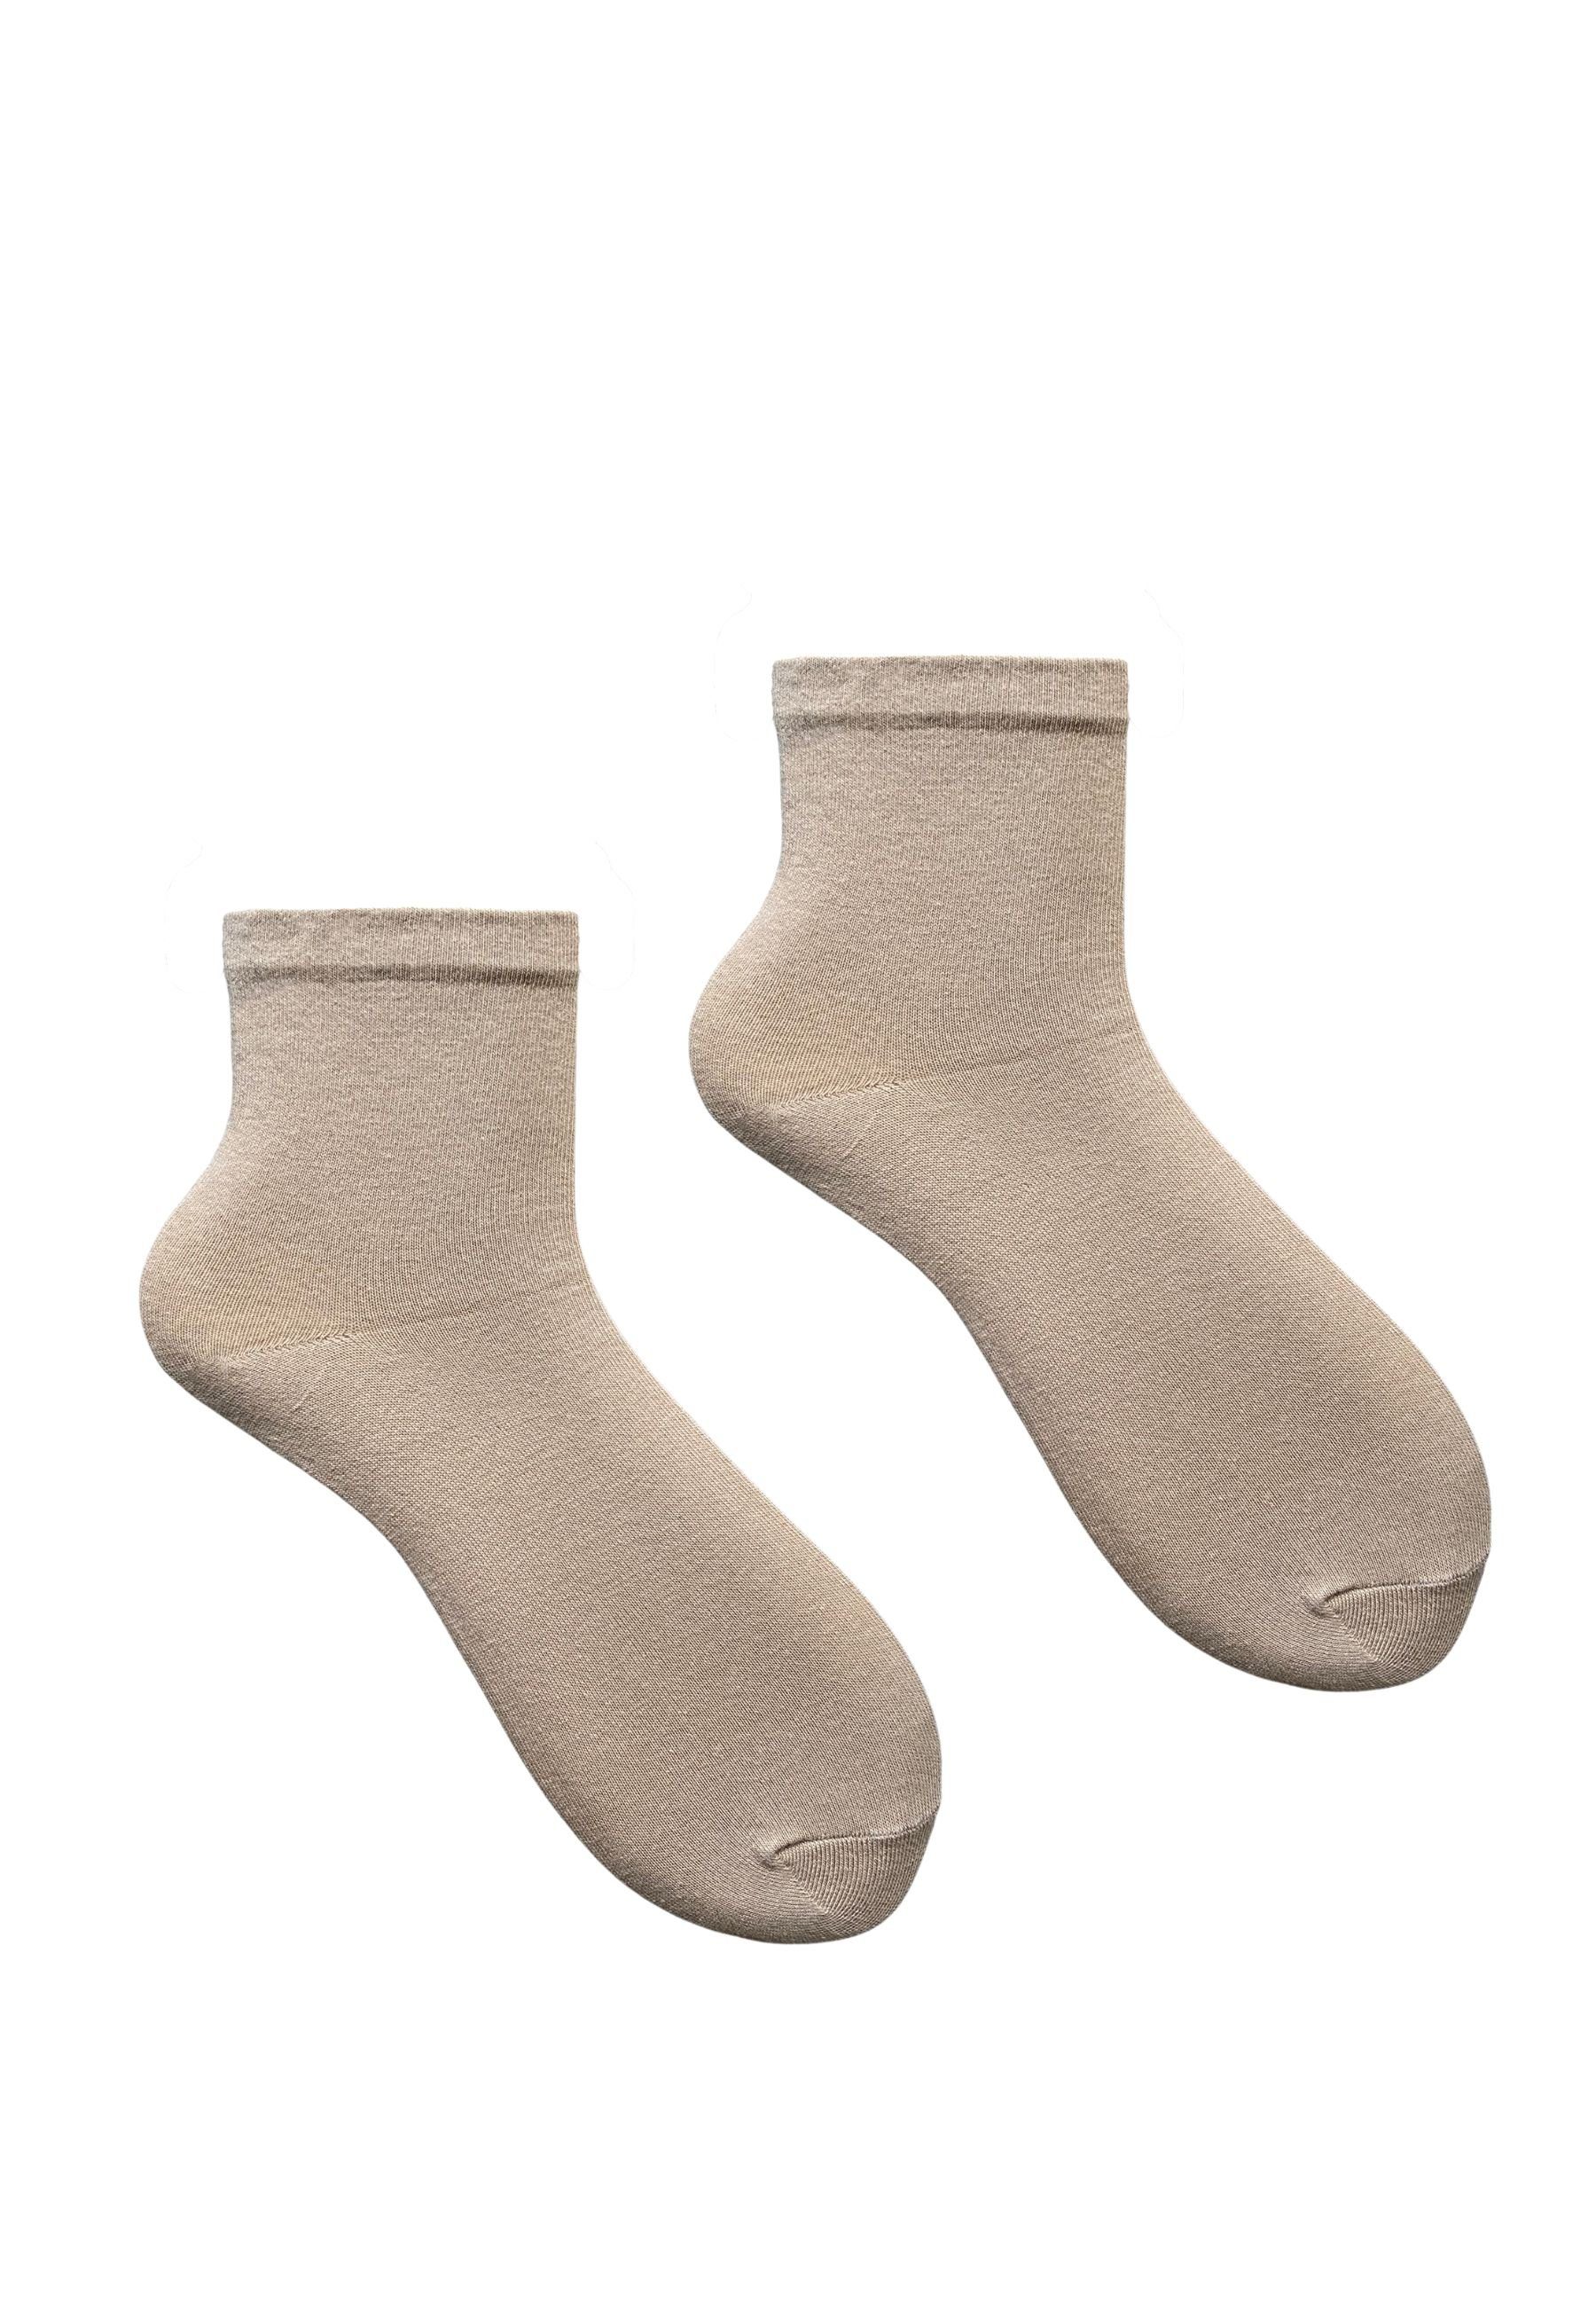 HESE SOX Basicsocken Socken Beige 5 SOCKEN BAUMWOLLE PAAR NO.11